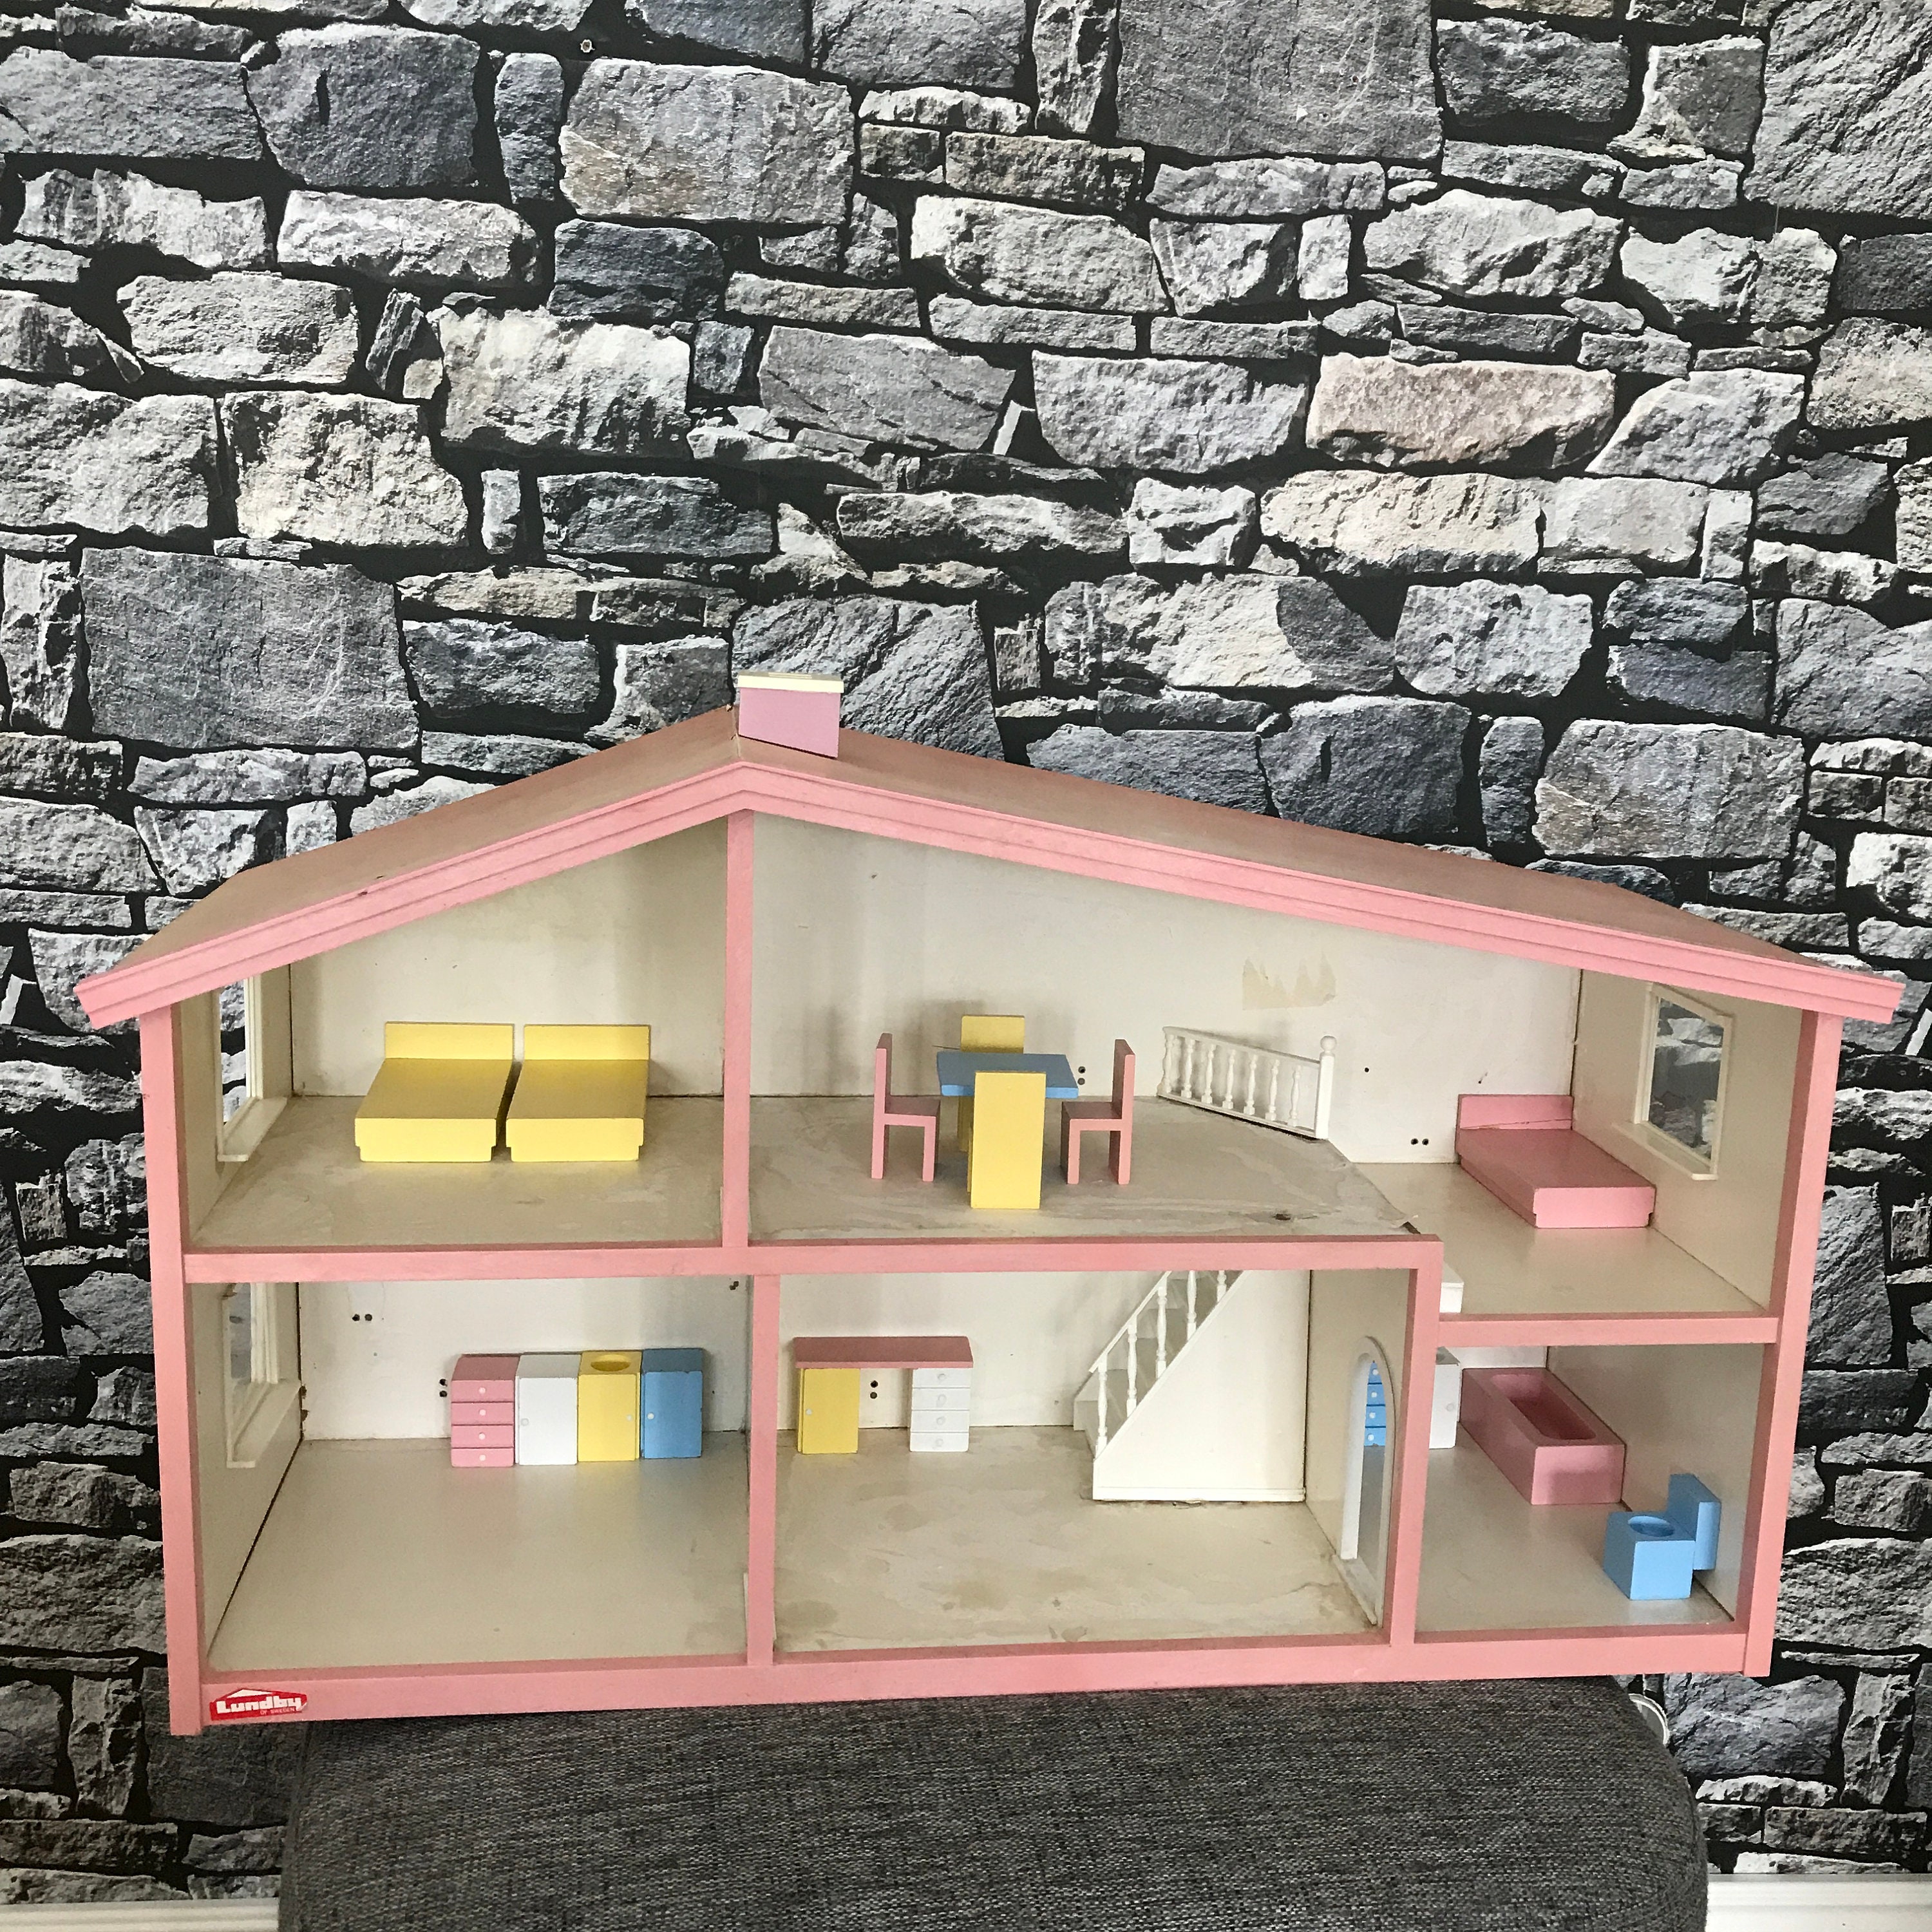 Lundby Dollhouse 